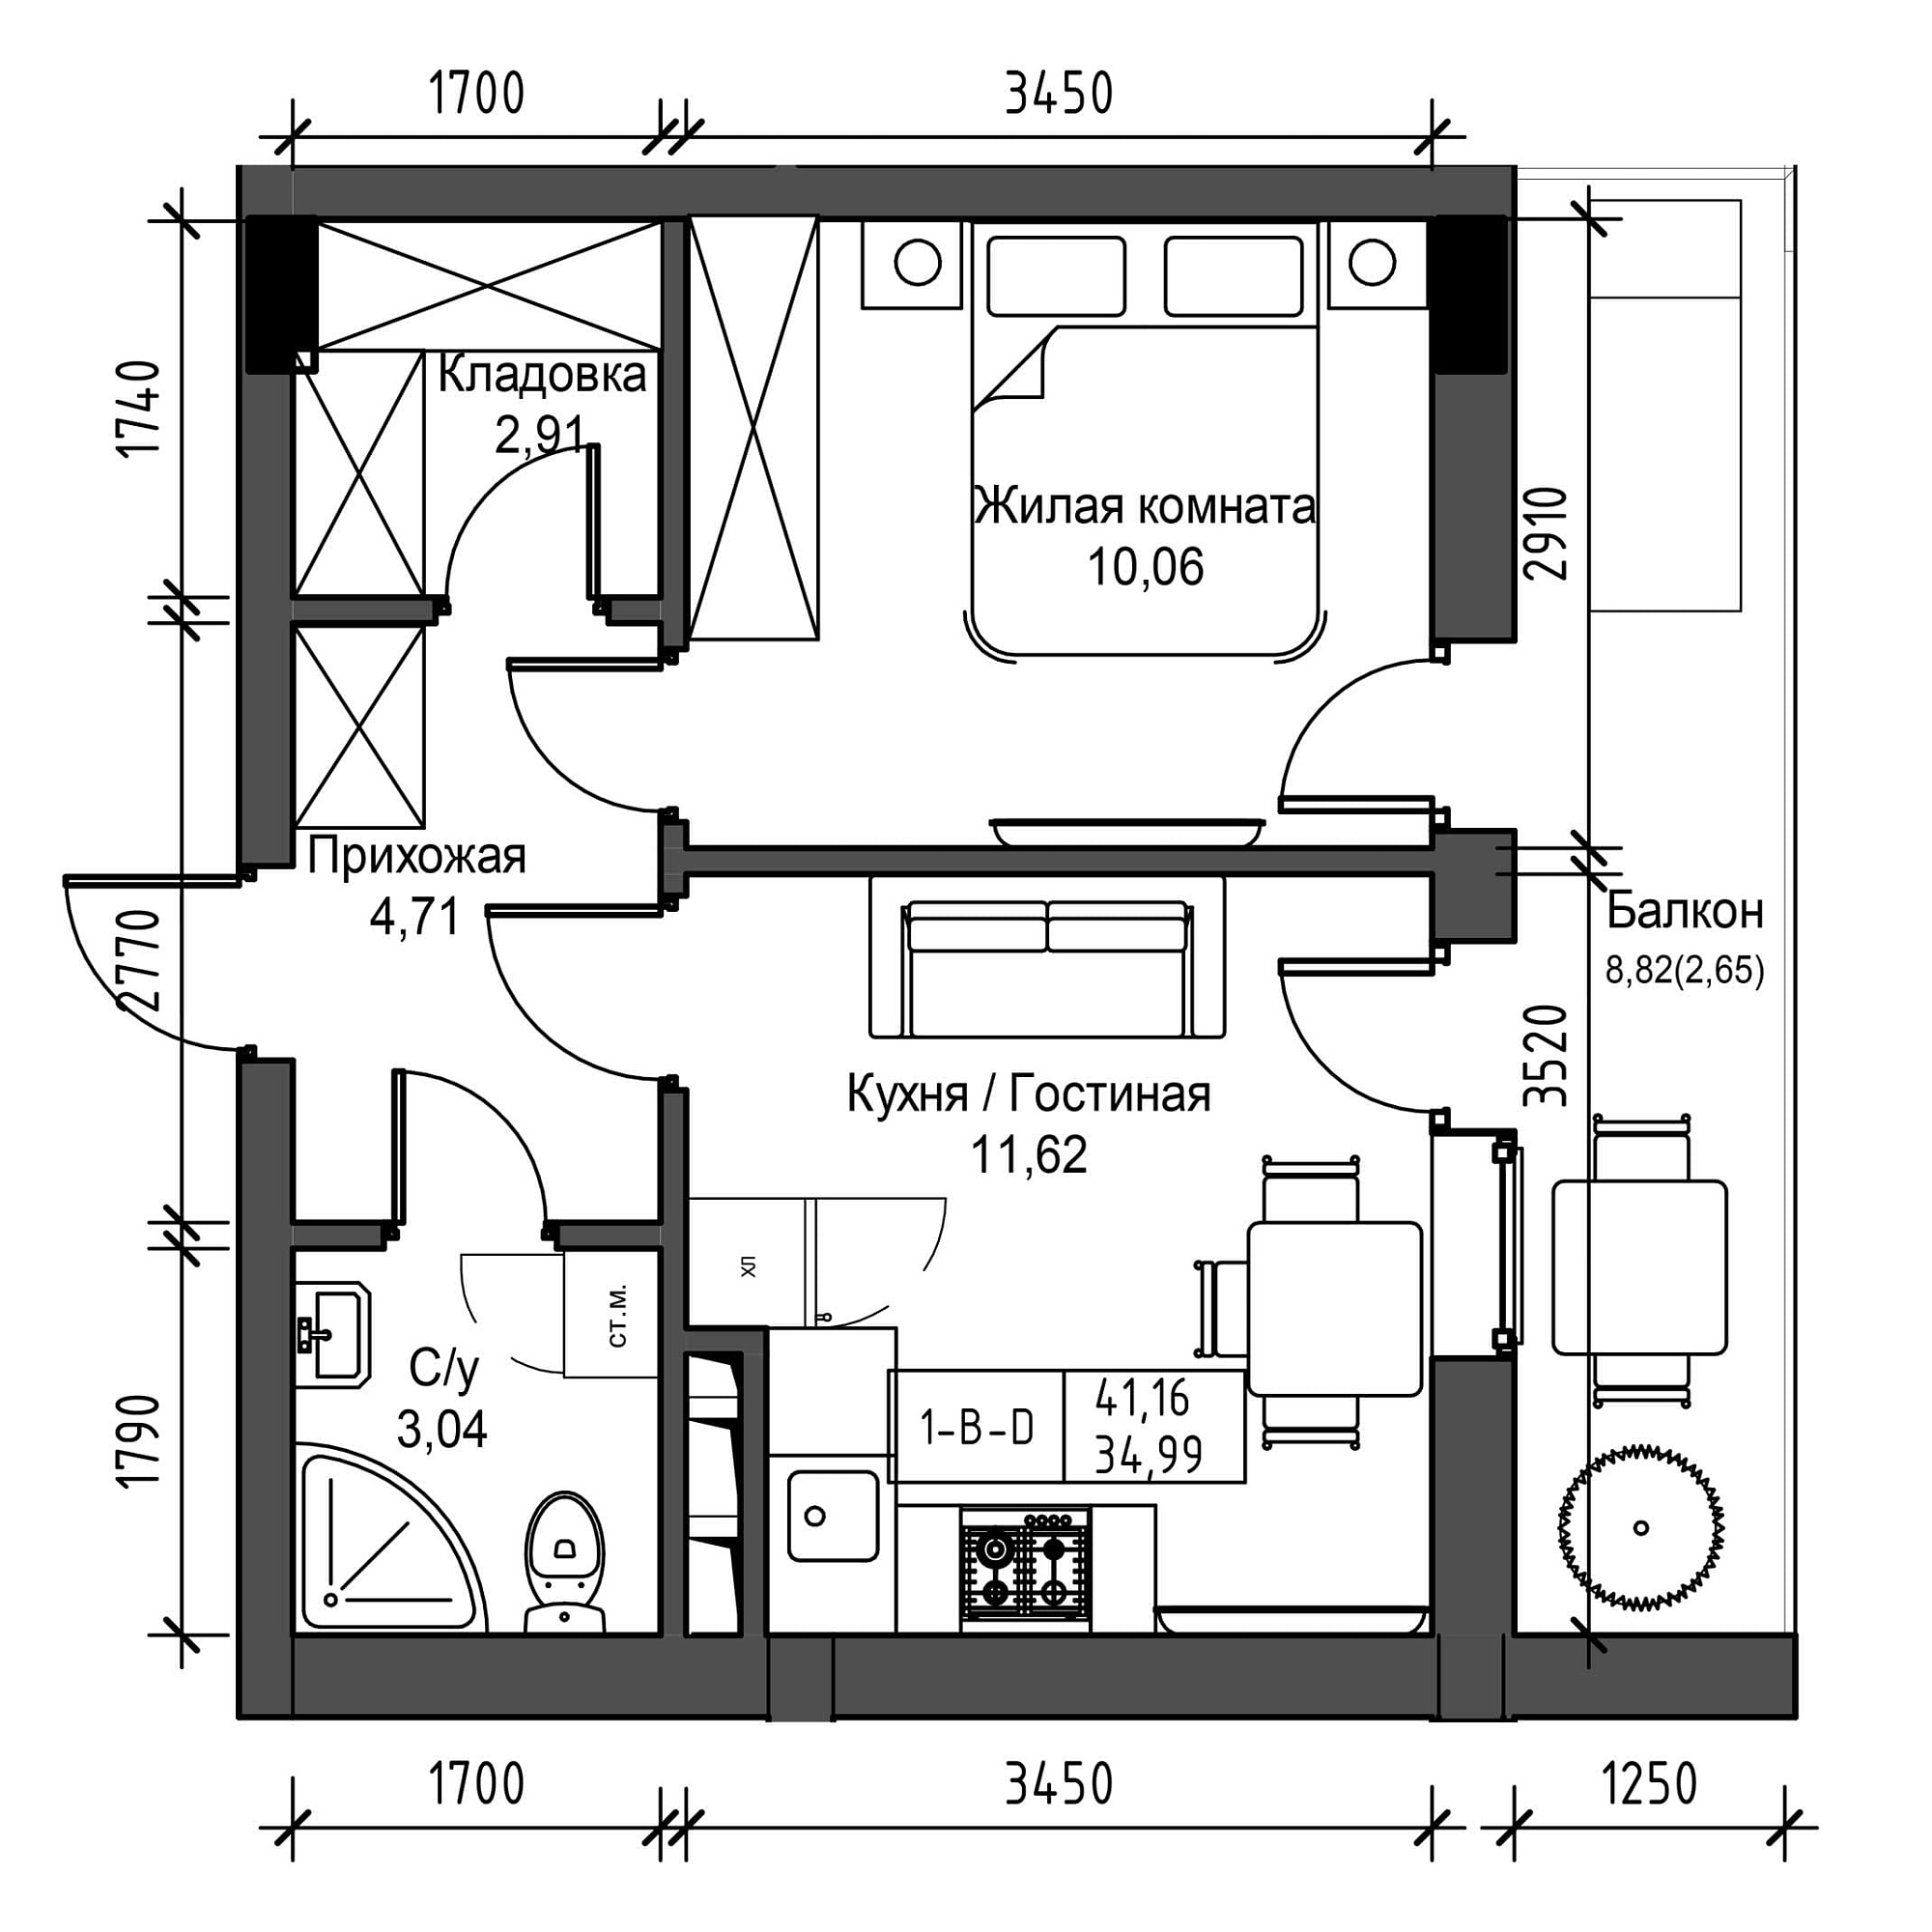 Планировка 1-к квартира площей 34.99м2, UM-001-06/0024.